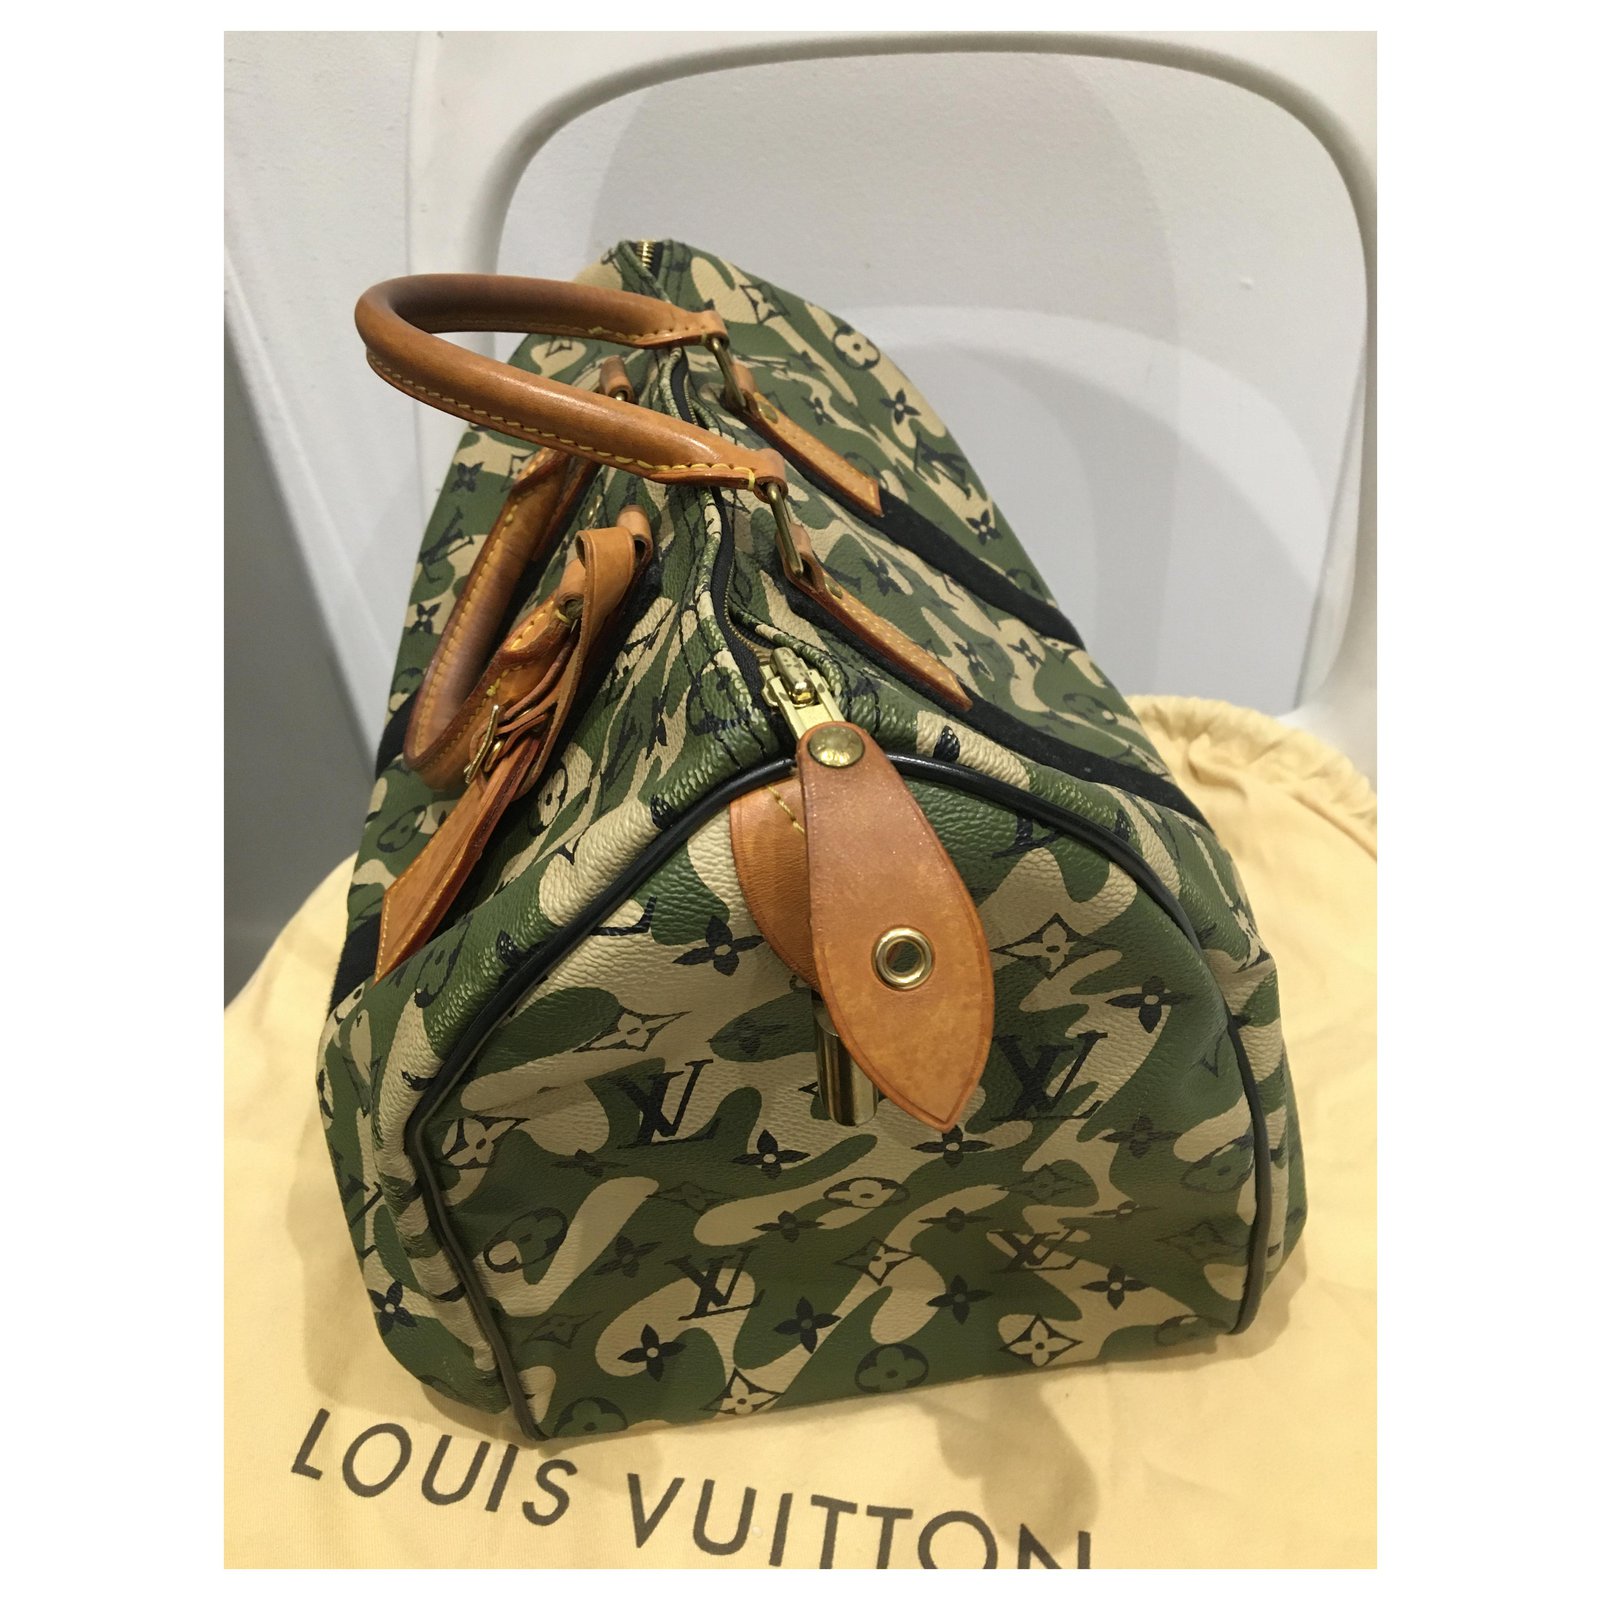 Louis Vuitton Takashi Murakami Speedy 35 Handbag